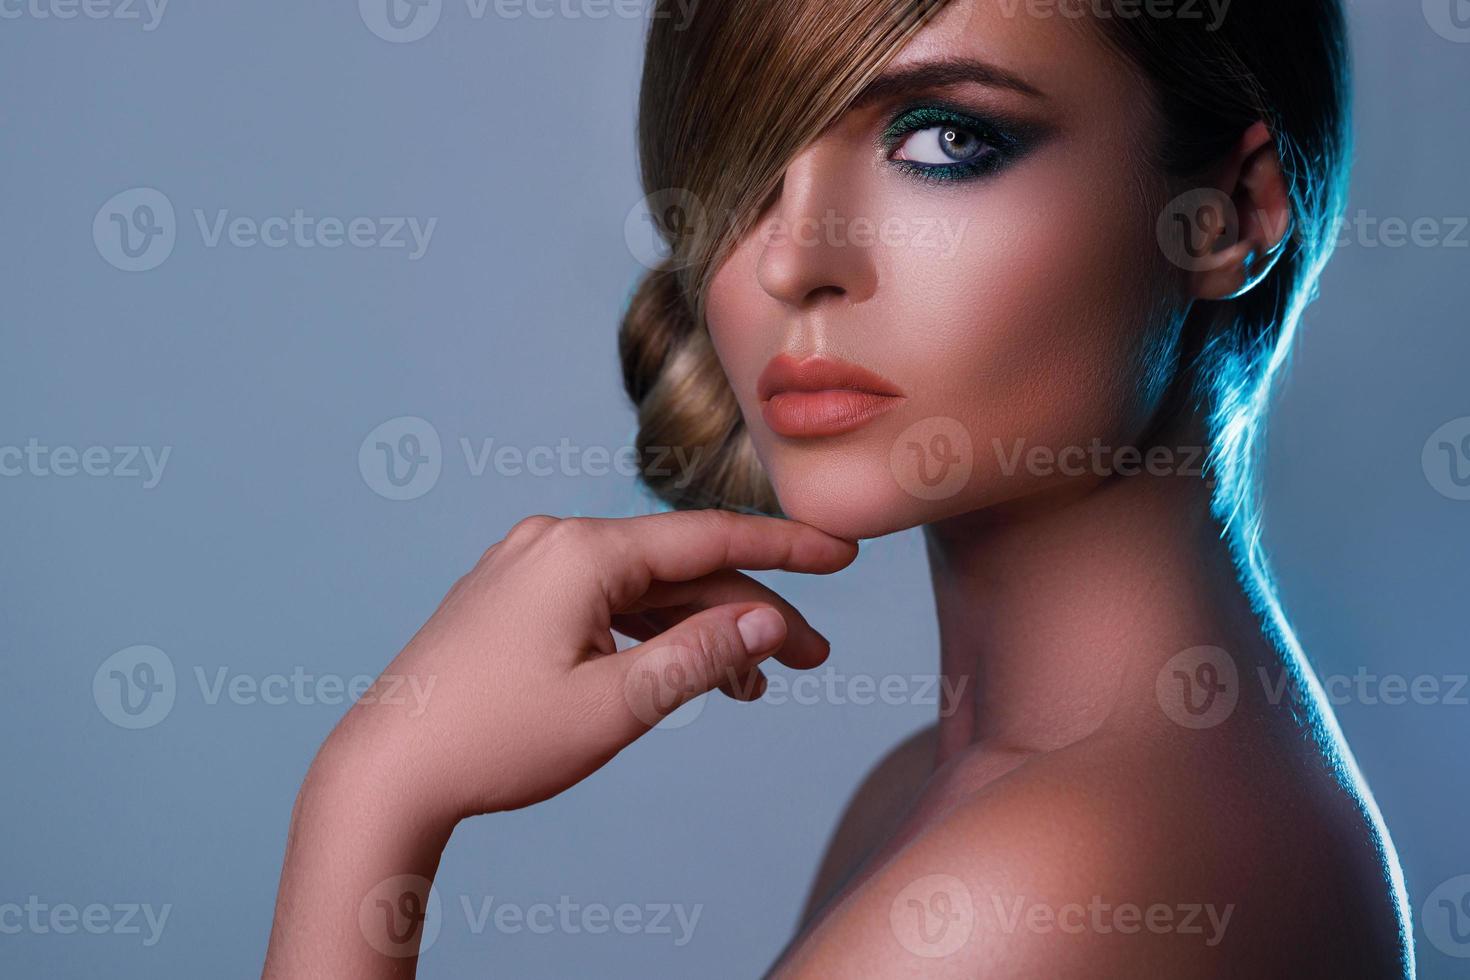 modèle sexy dans une image élégante avec des cheveux lisses couvrant un œil et de belles ombres à paupières vertes sur un autre photo